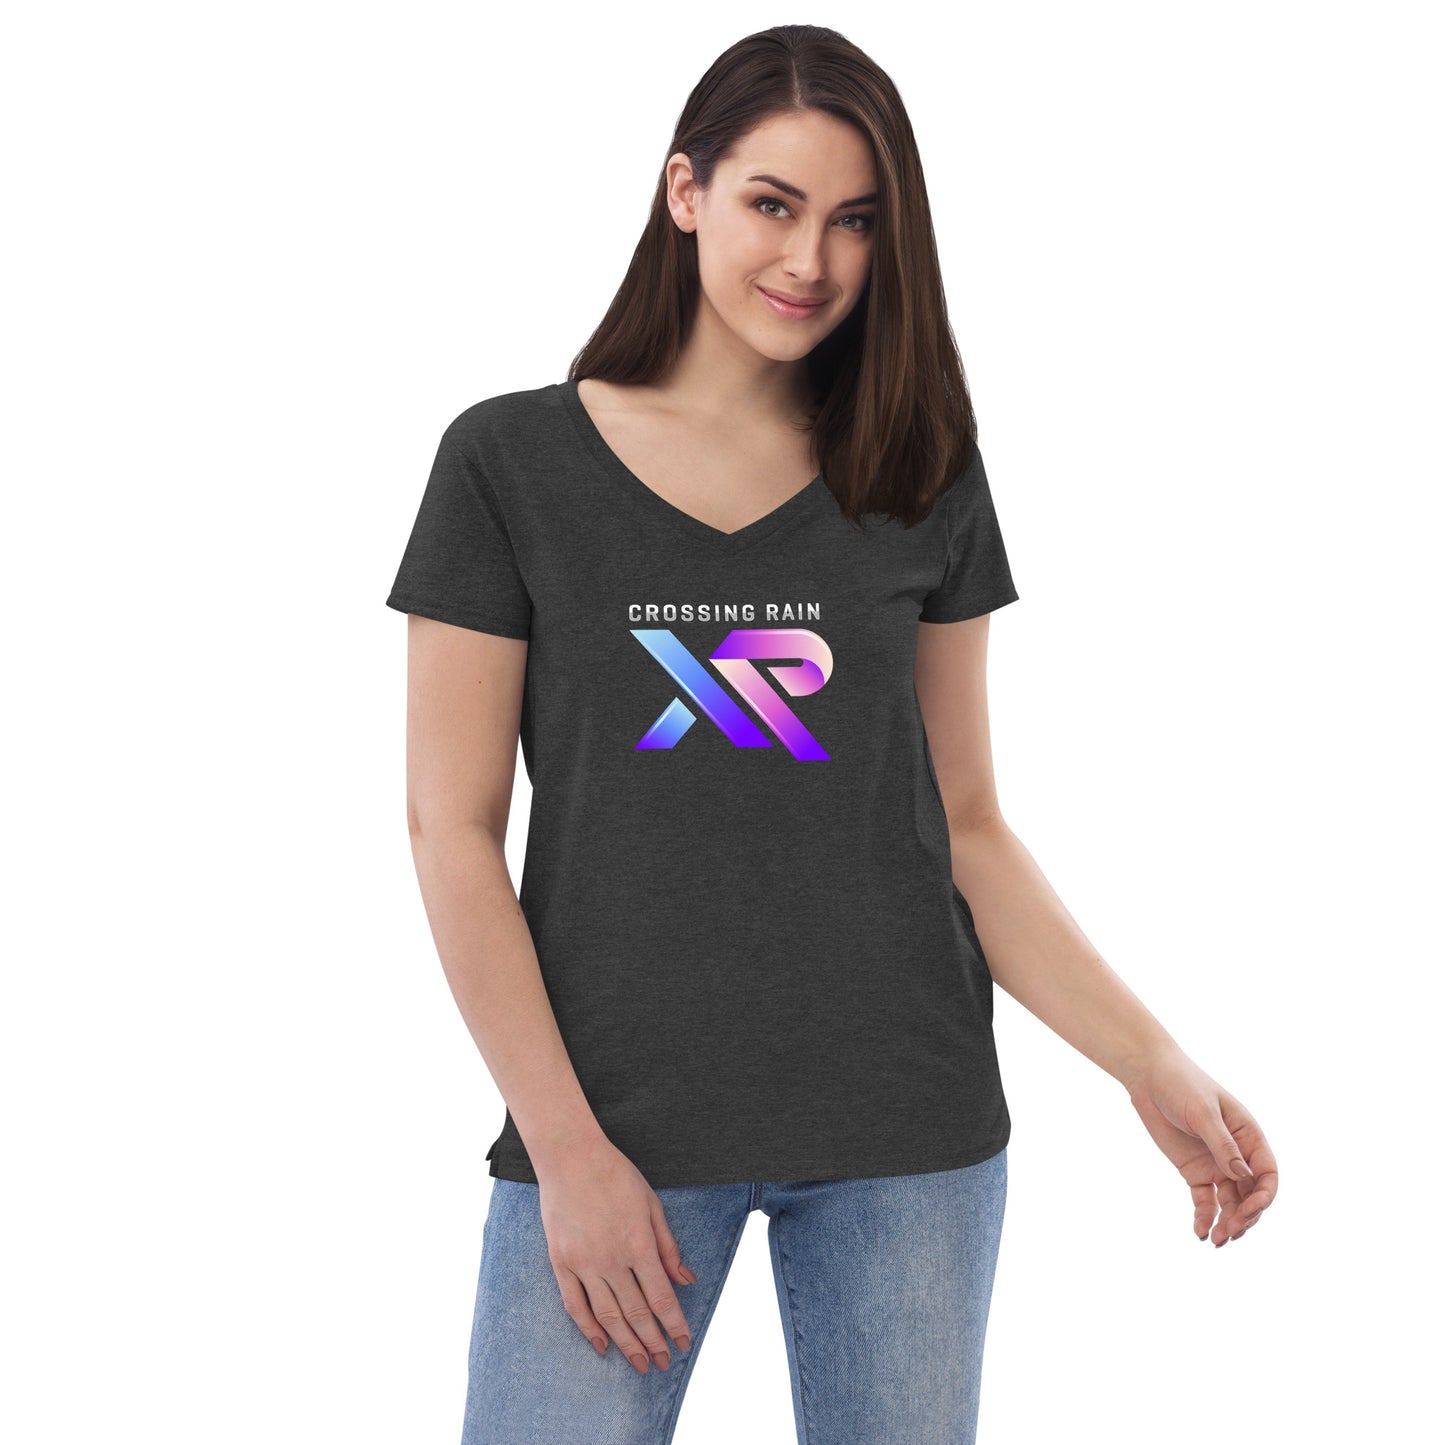 XR Women’s recycled v-neck t-shirt